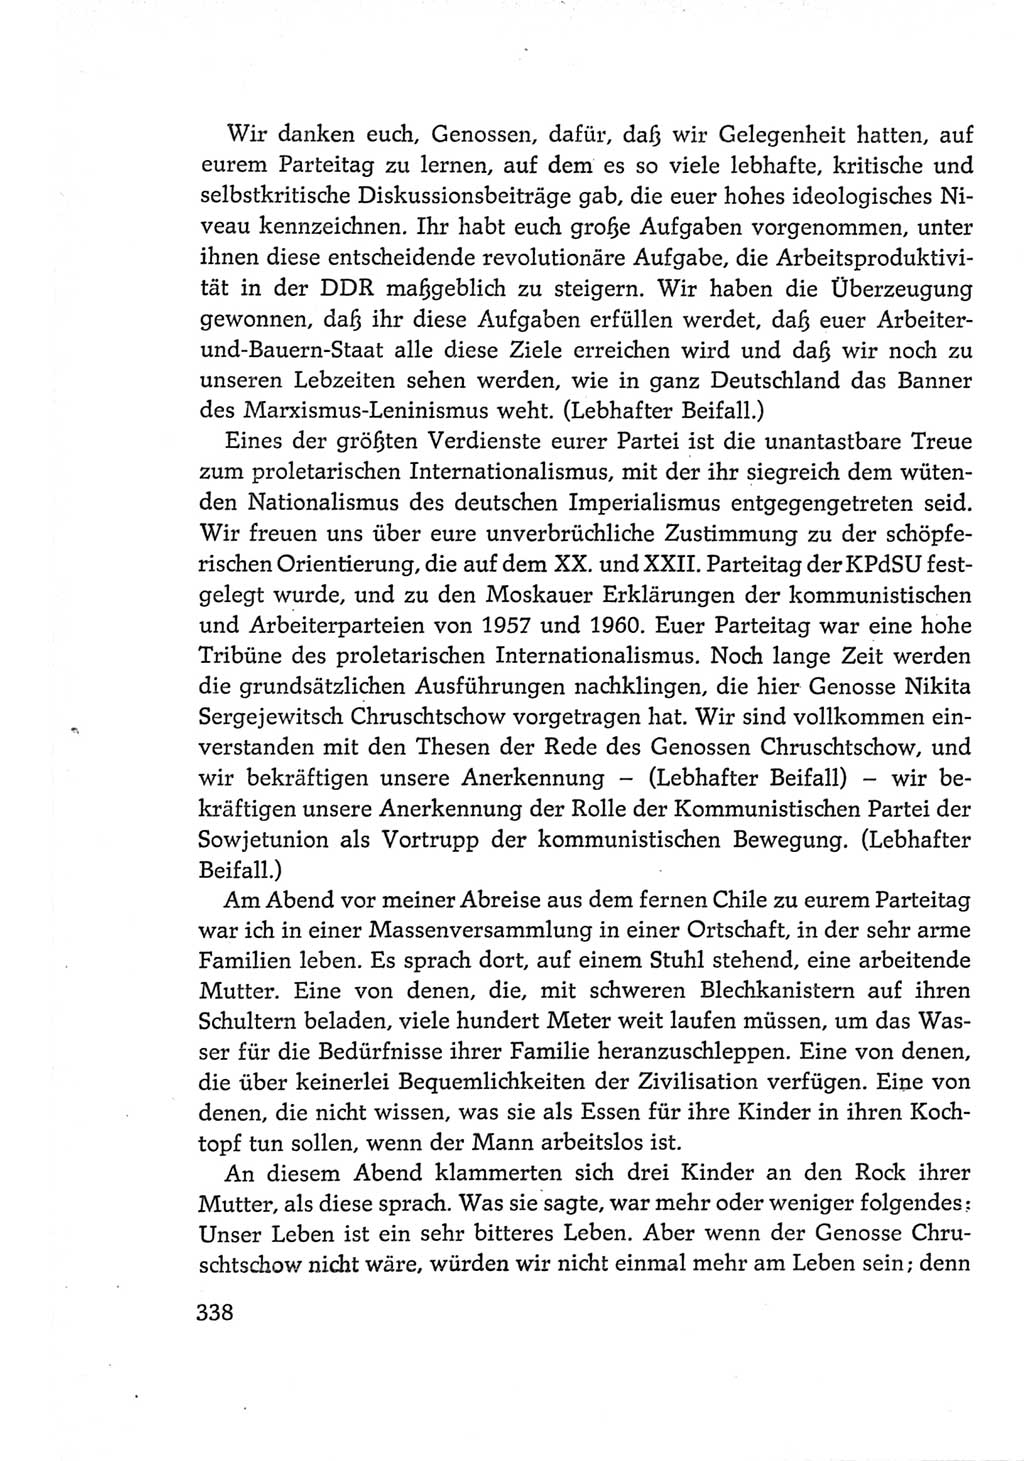 Protokoll der Verhandlungen des Ⅵ. Parteitages der Sozialistischen Einheitspartei Deutschlands (SED) [Deutsche Demokratische Republik (DDR)] 1963, Band Ⅱ, Seite 338 (Prot. Verh. Ⅵ. PT SED DDR 1963, Bd. Ⅱ, S. 338)